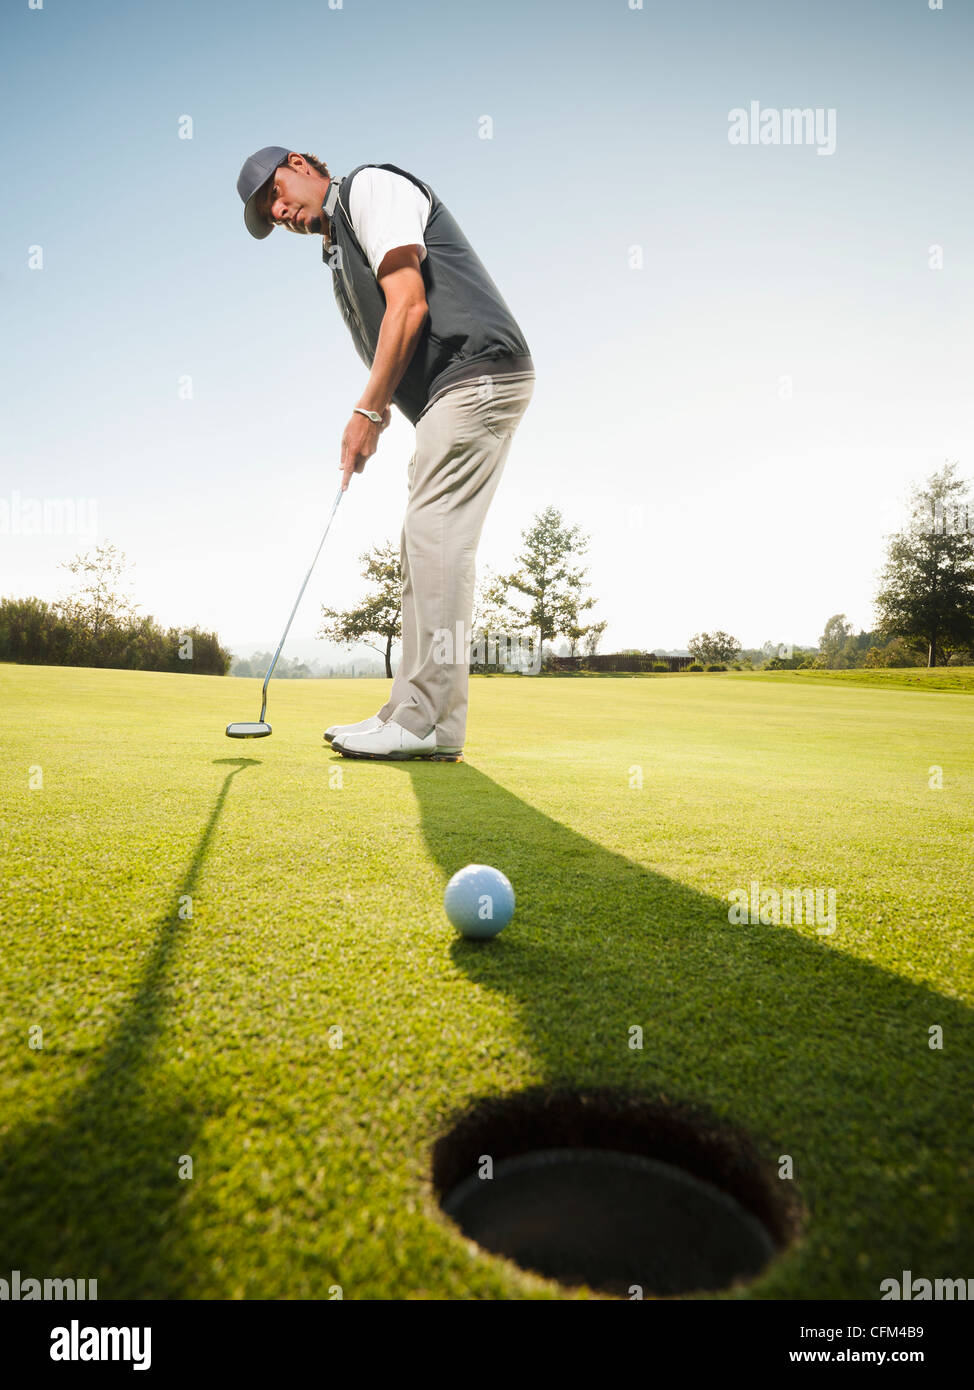 Stati Uniti, California, Mission Viejo, uomo giocando a golf Foto Stock